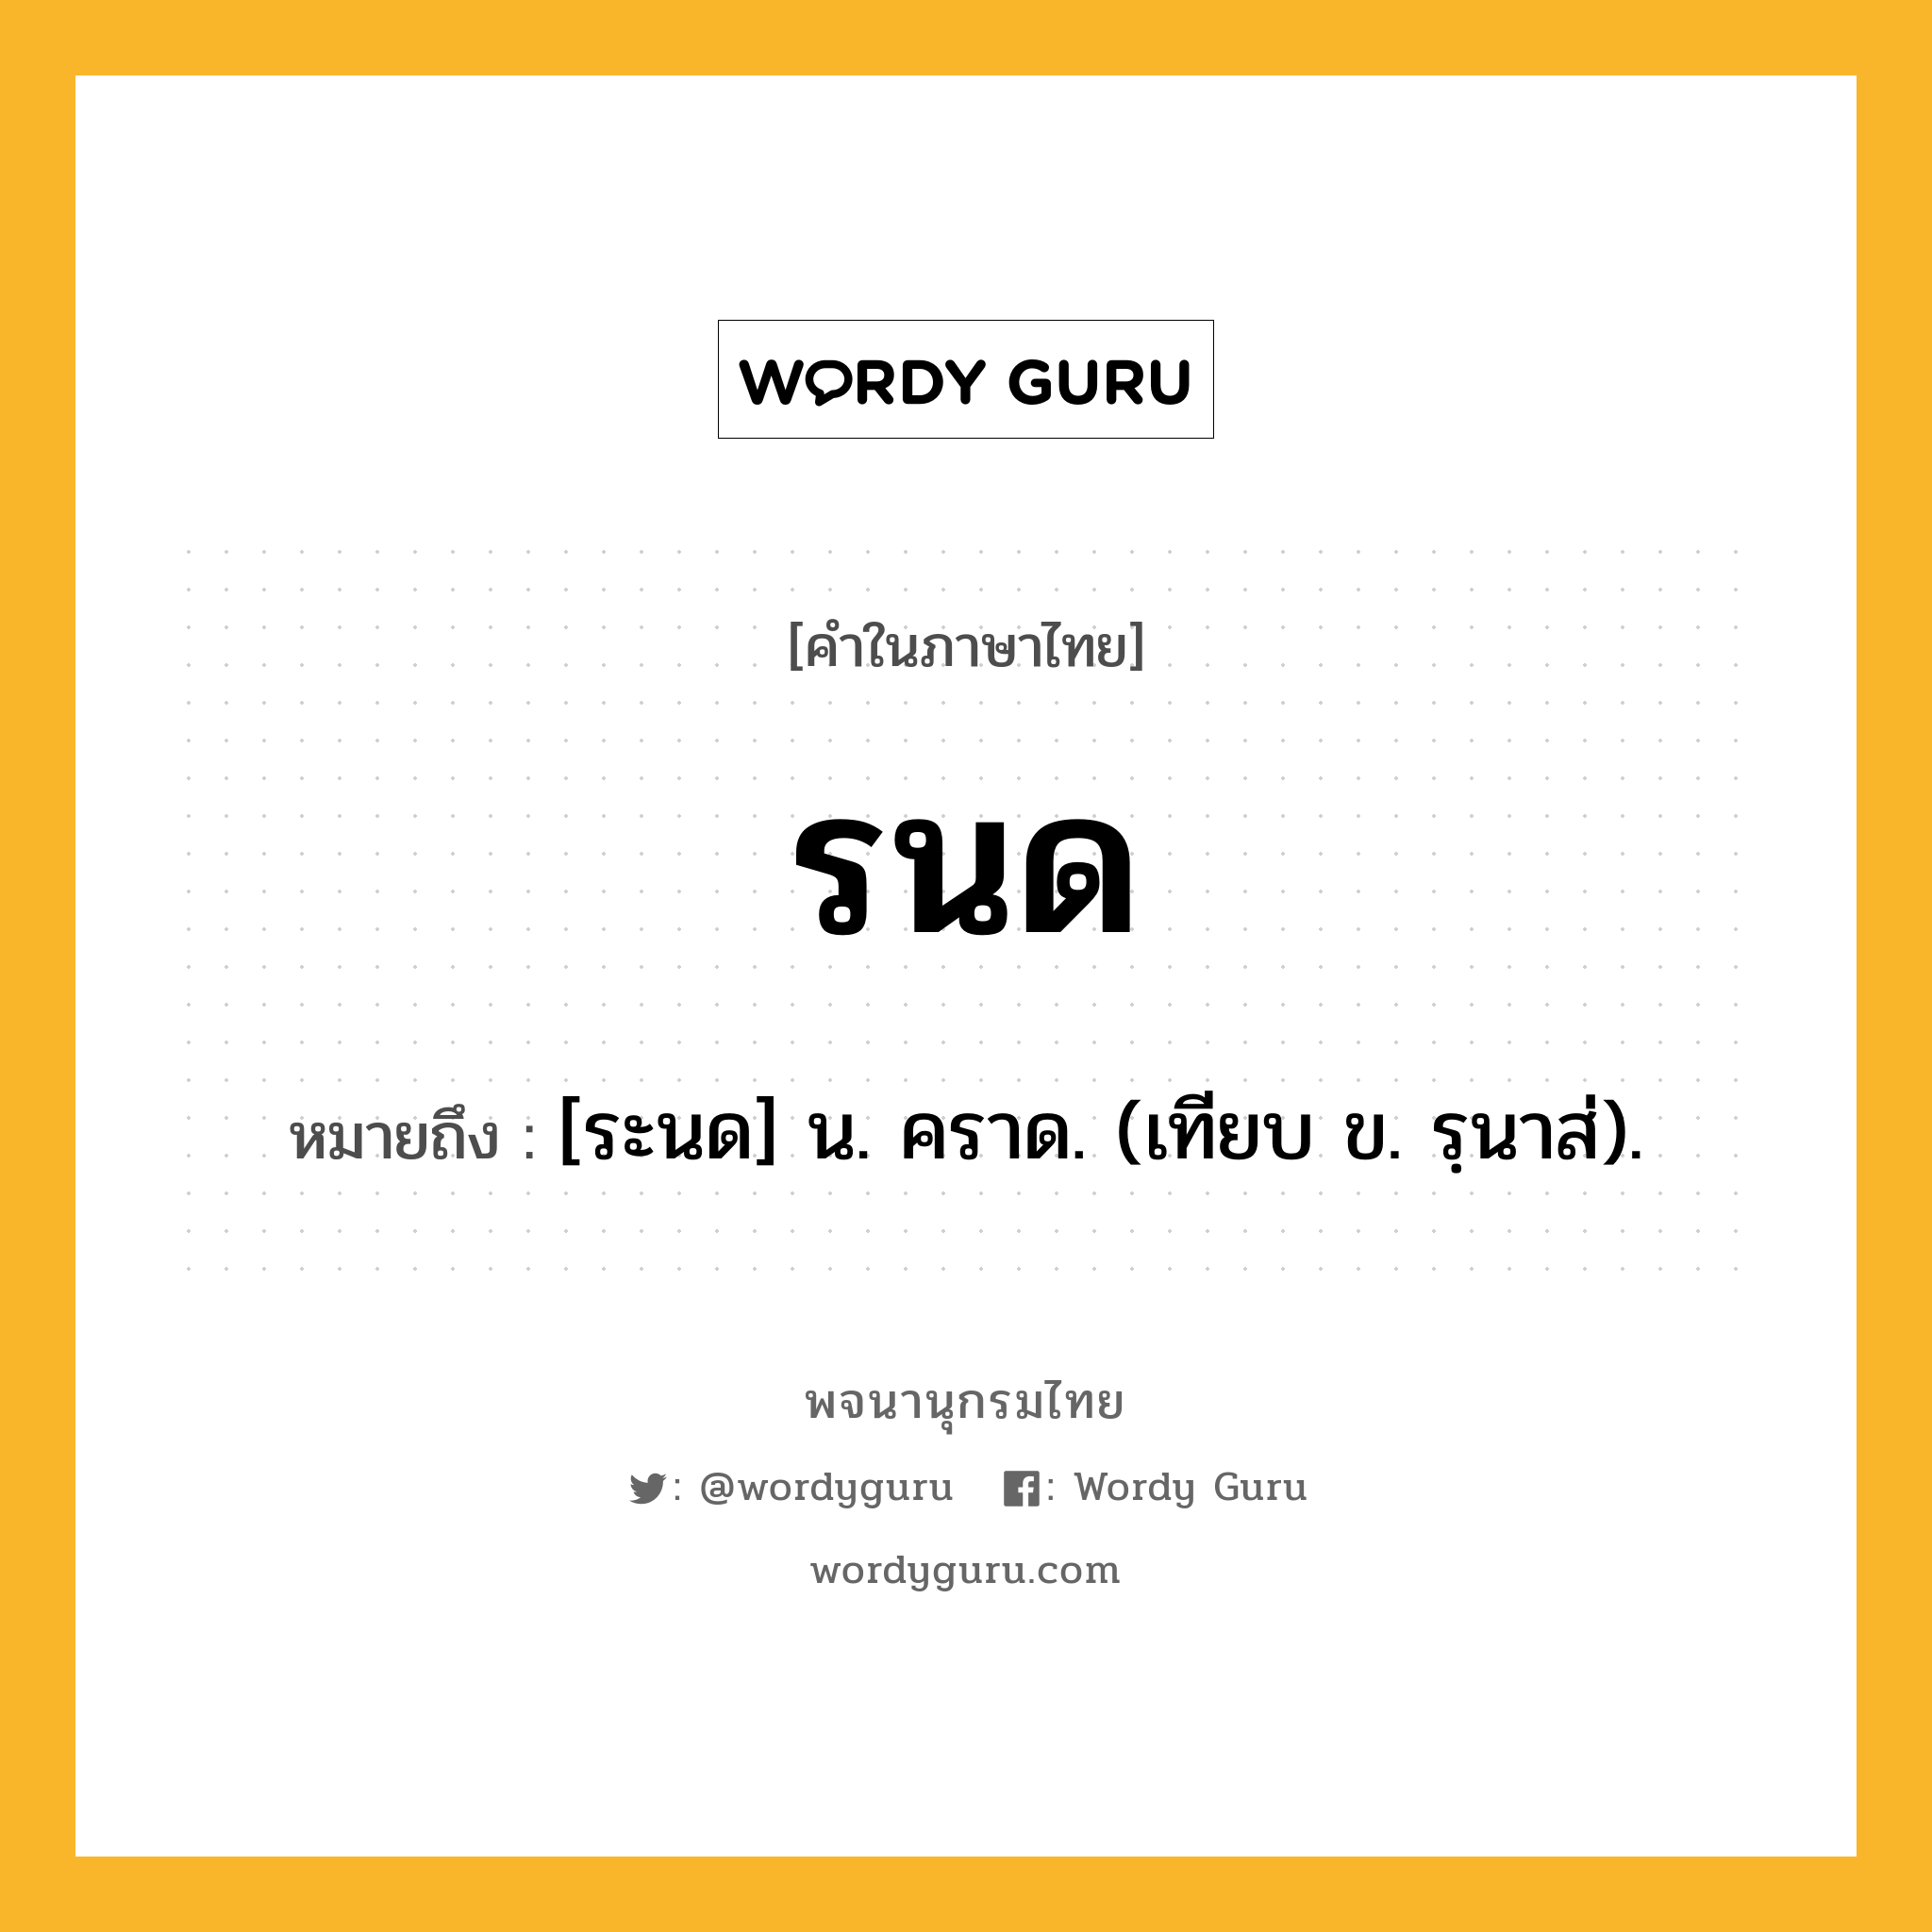 รนด หมายถึงอะไร?, คำในภาษาไทย รนด หมายถึง [ระนด] น. คราด. (เทียบ ข. รฺนาส่).